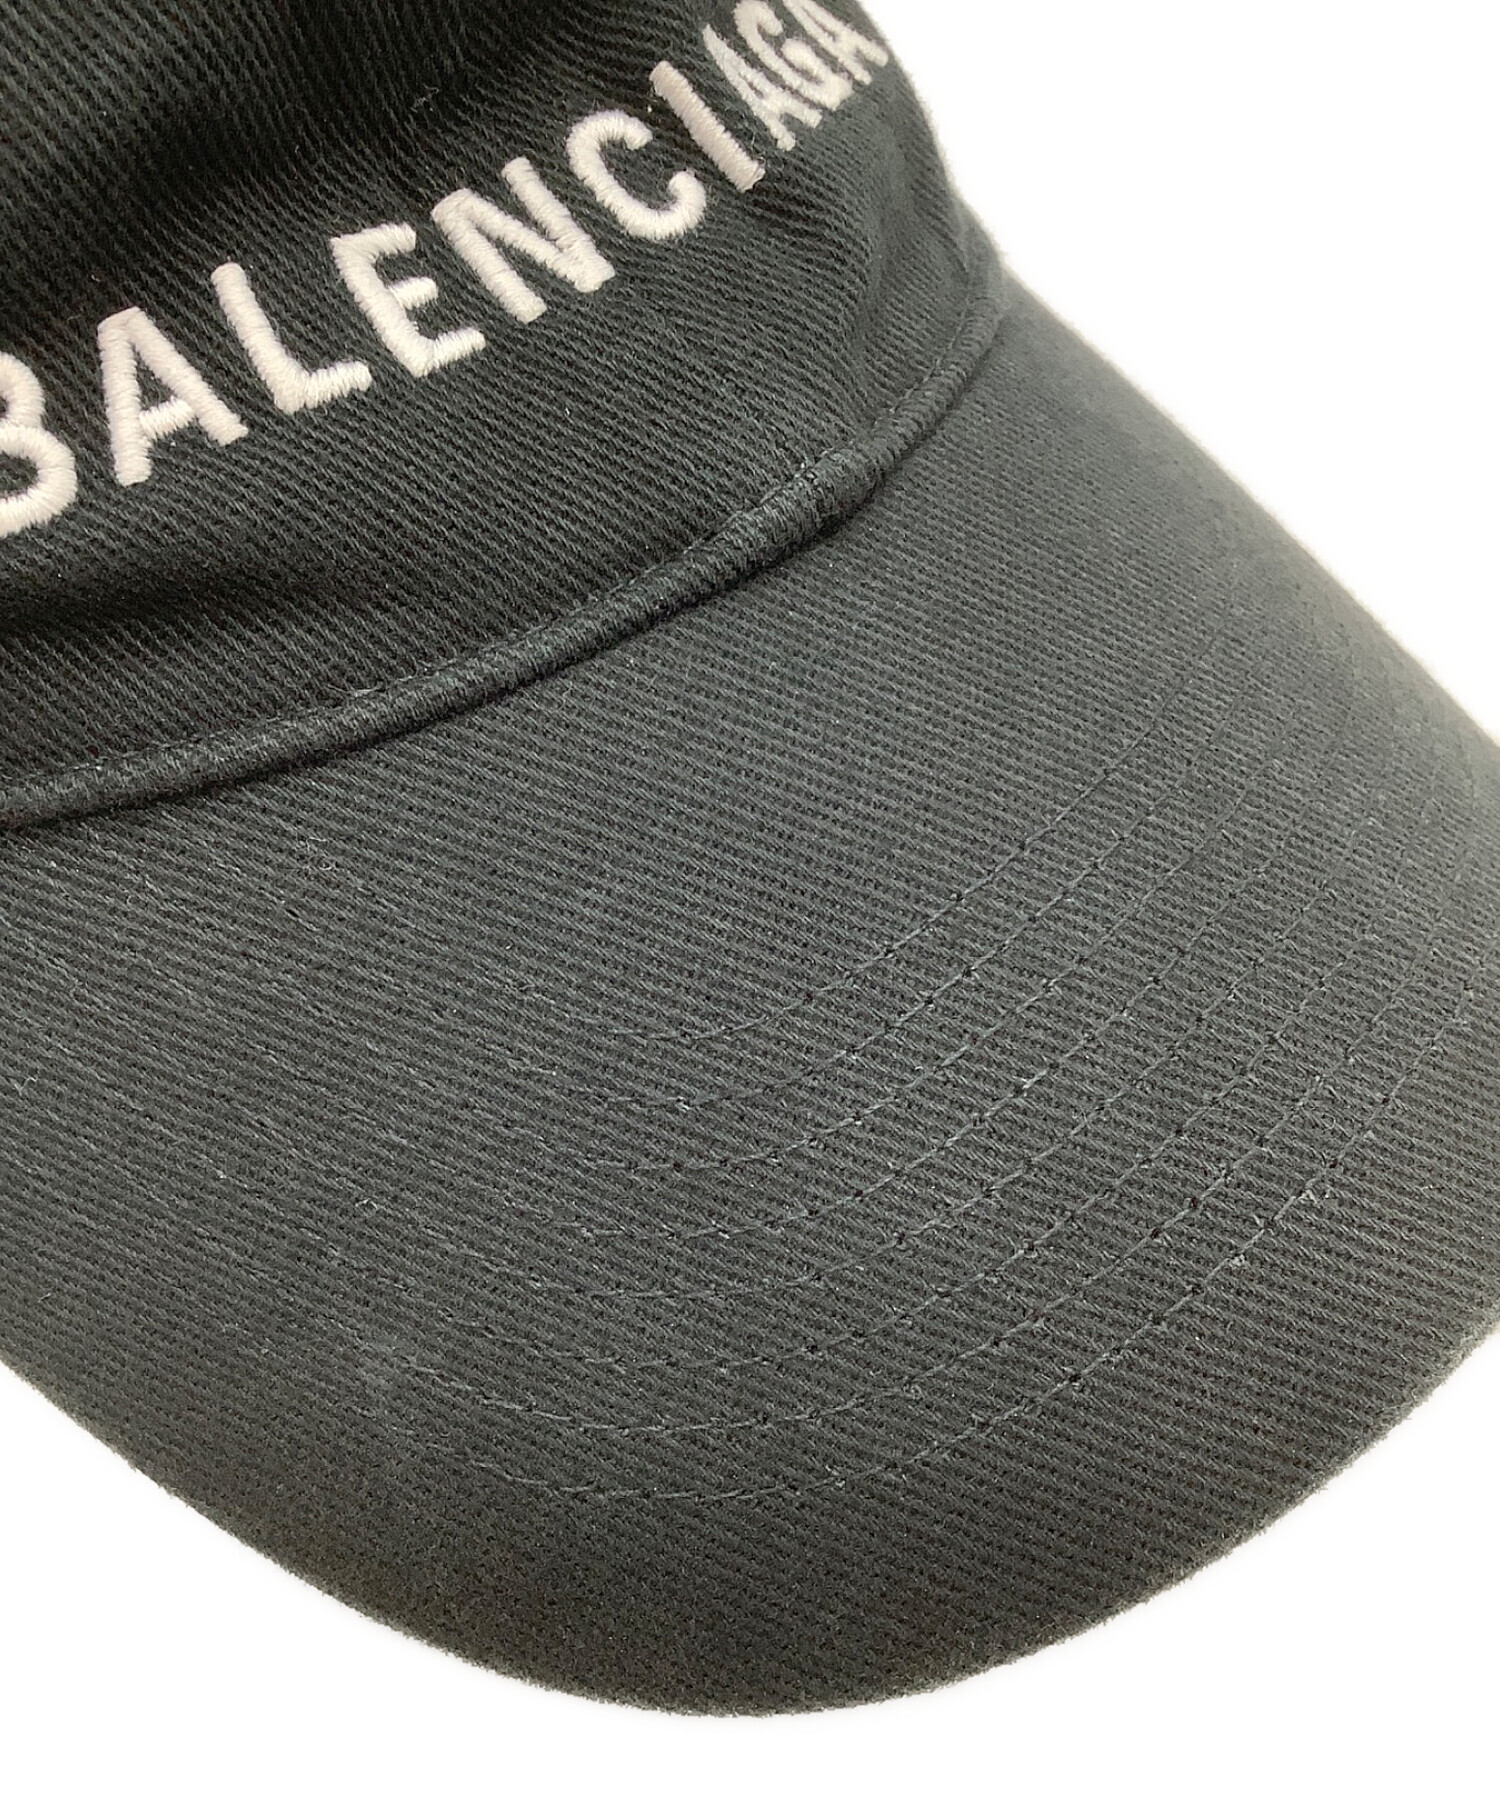 バレンシアガ 初期 ロゴ キャップ L 58cm イタリア製 - 帽子